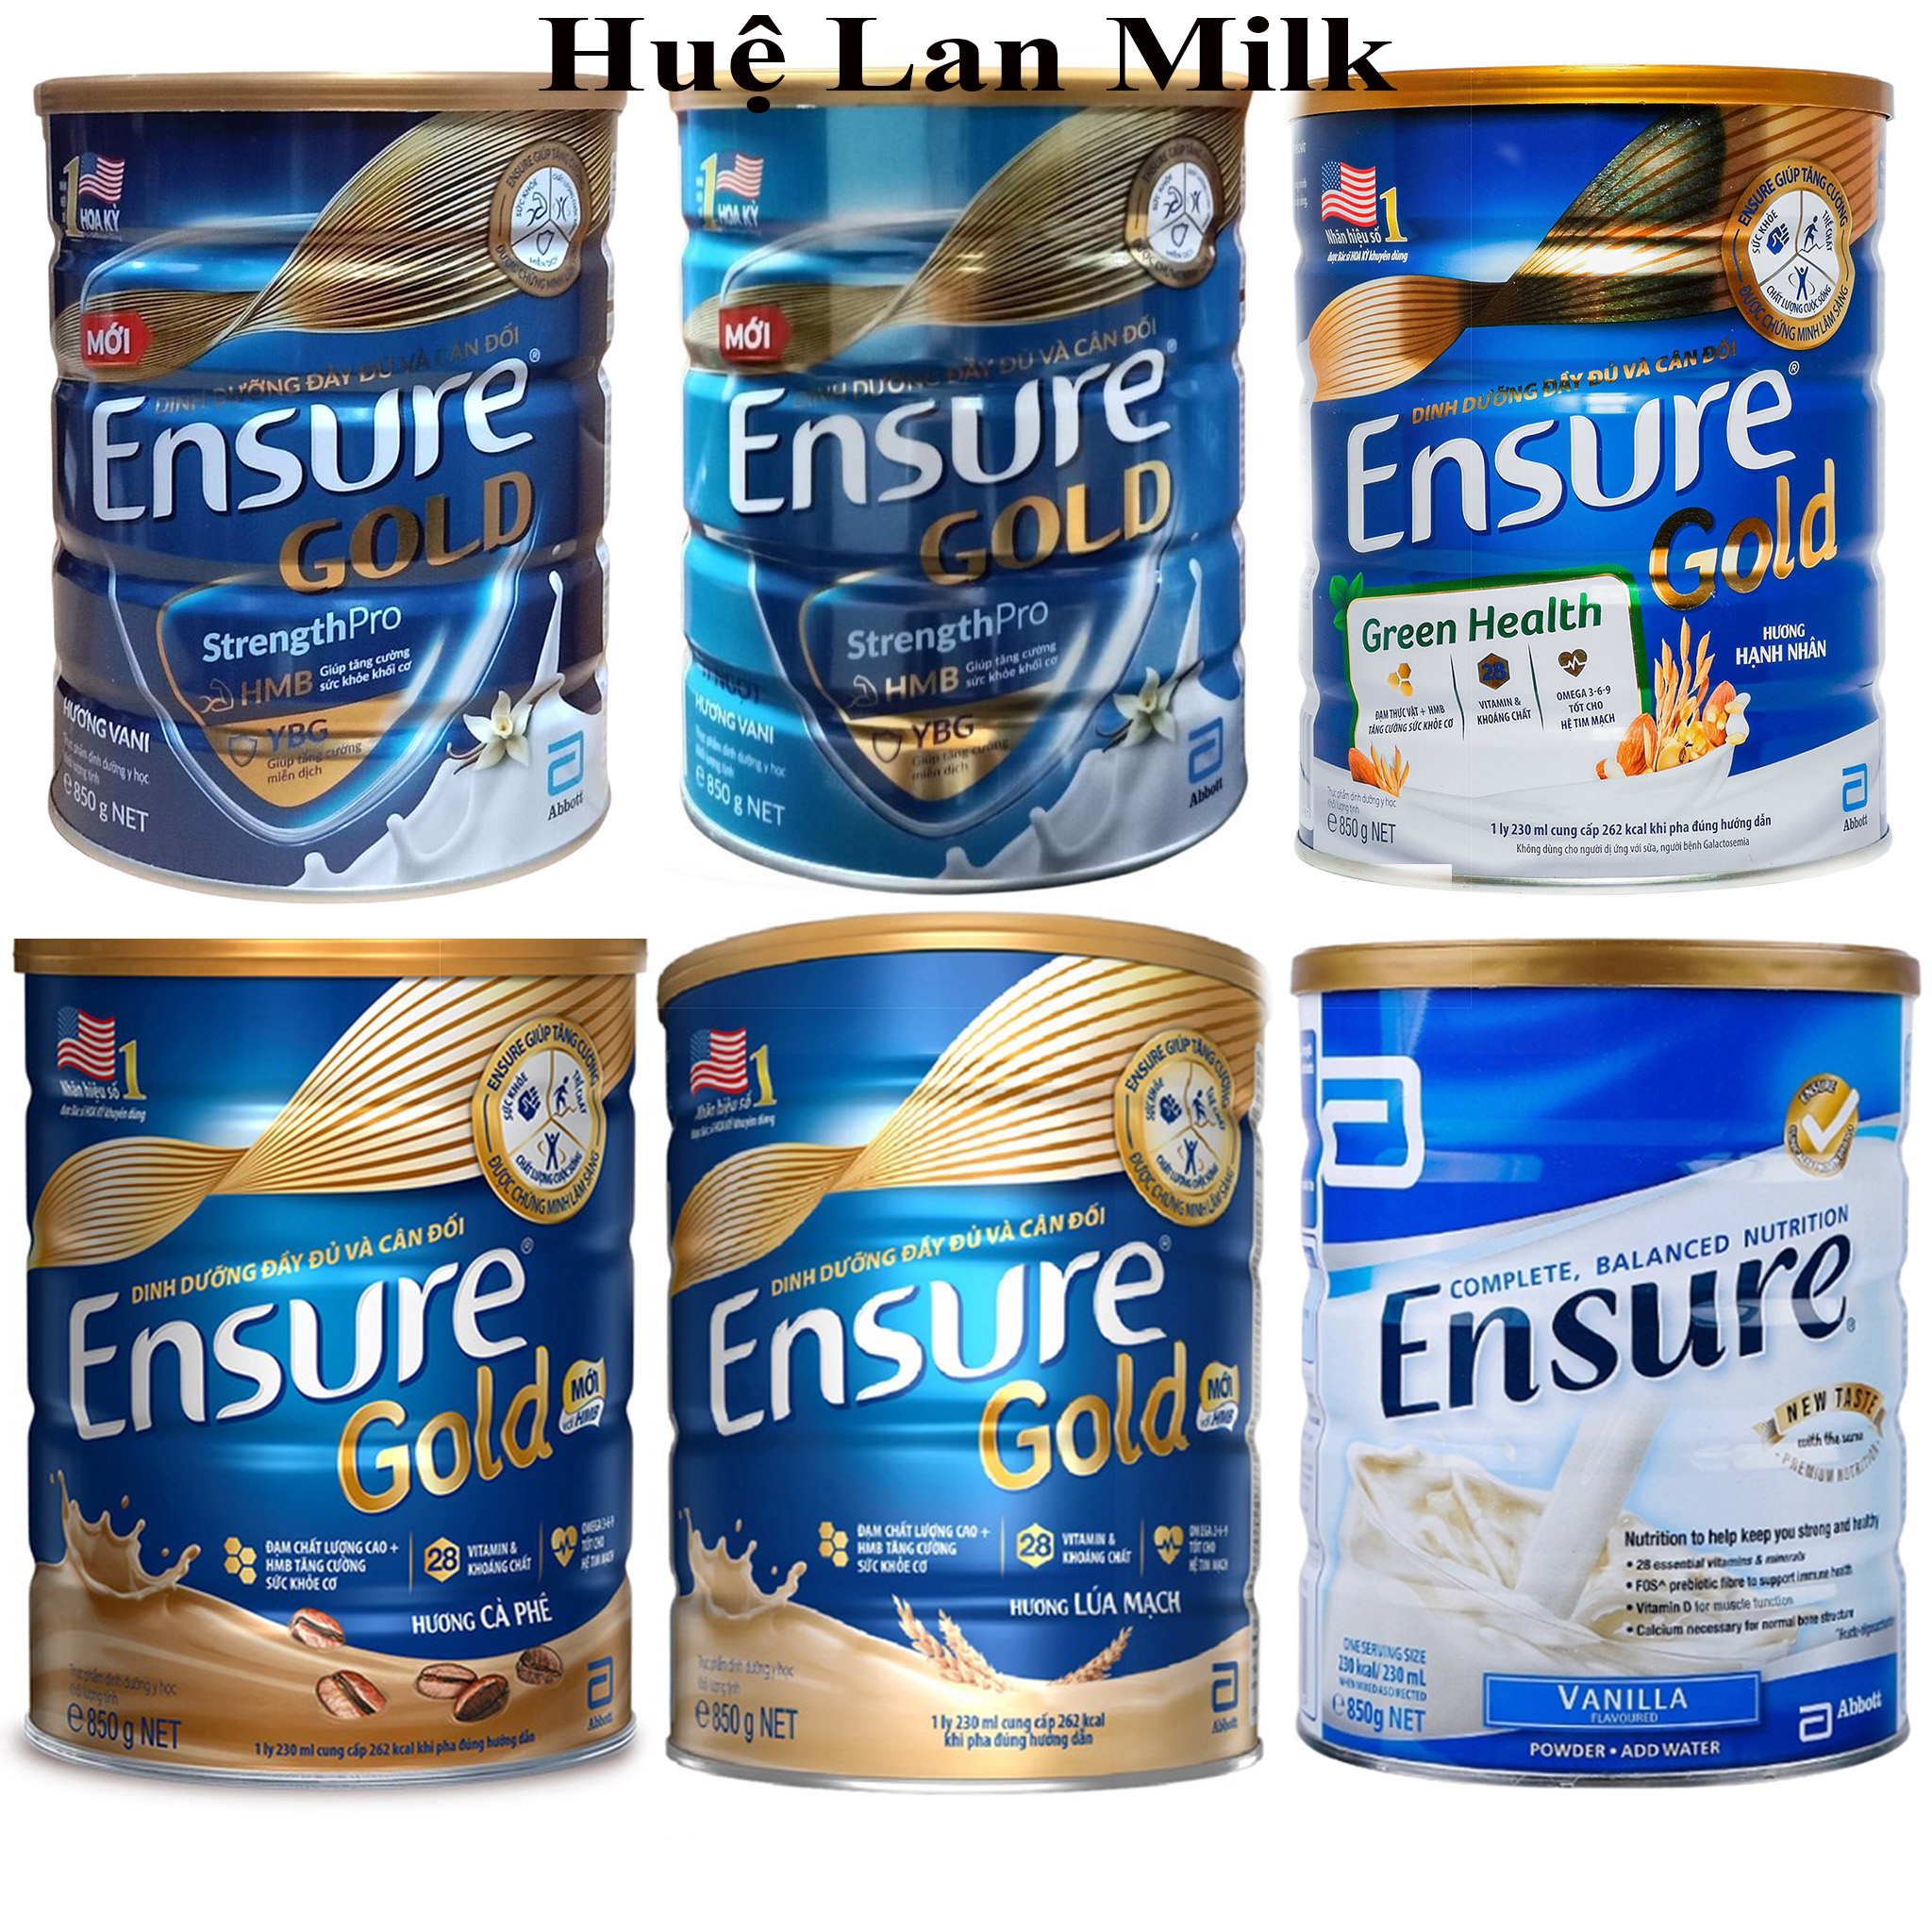 Sữa Bột  Abbott Ensure Gold HMB Hương Vani/ Vani Ít Ngọt/ Hạnh Nhân/ Cà phê/ Lúa Mạch/ Ensure Úc - Hộp 850g